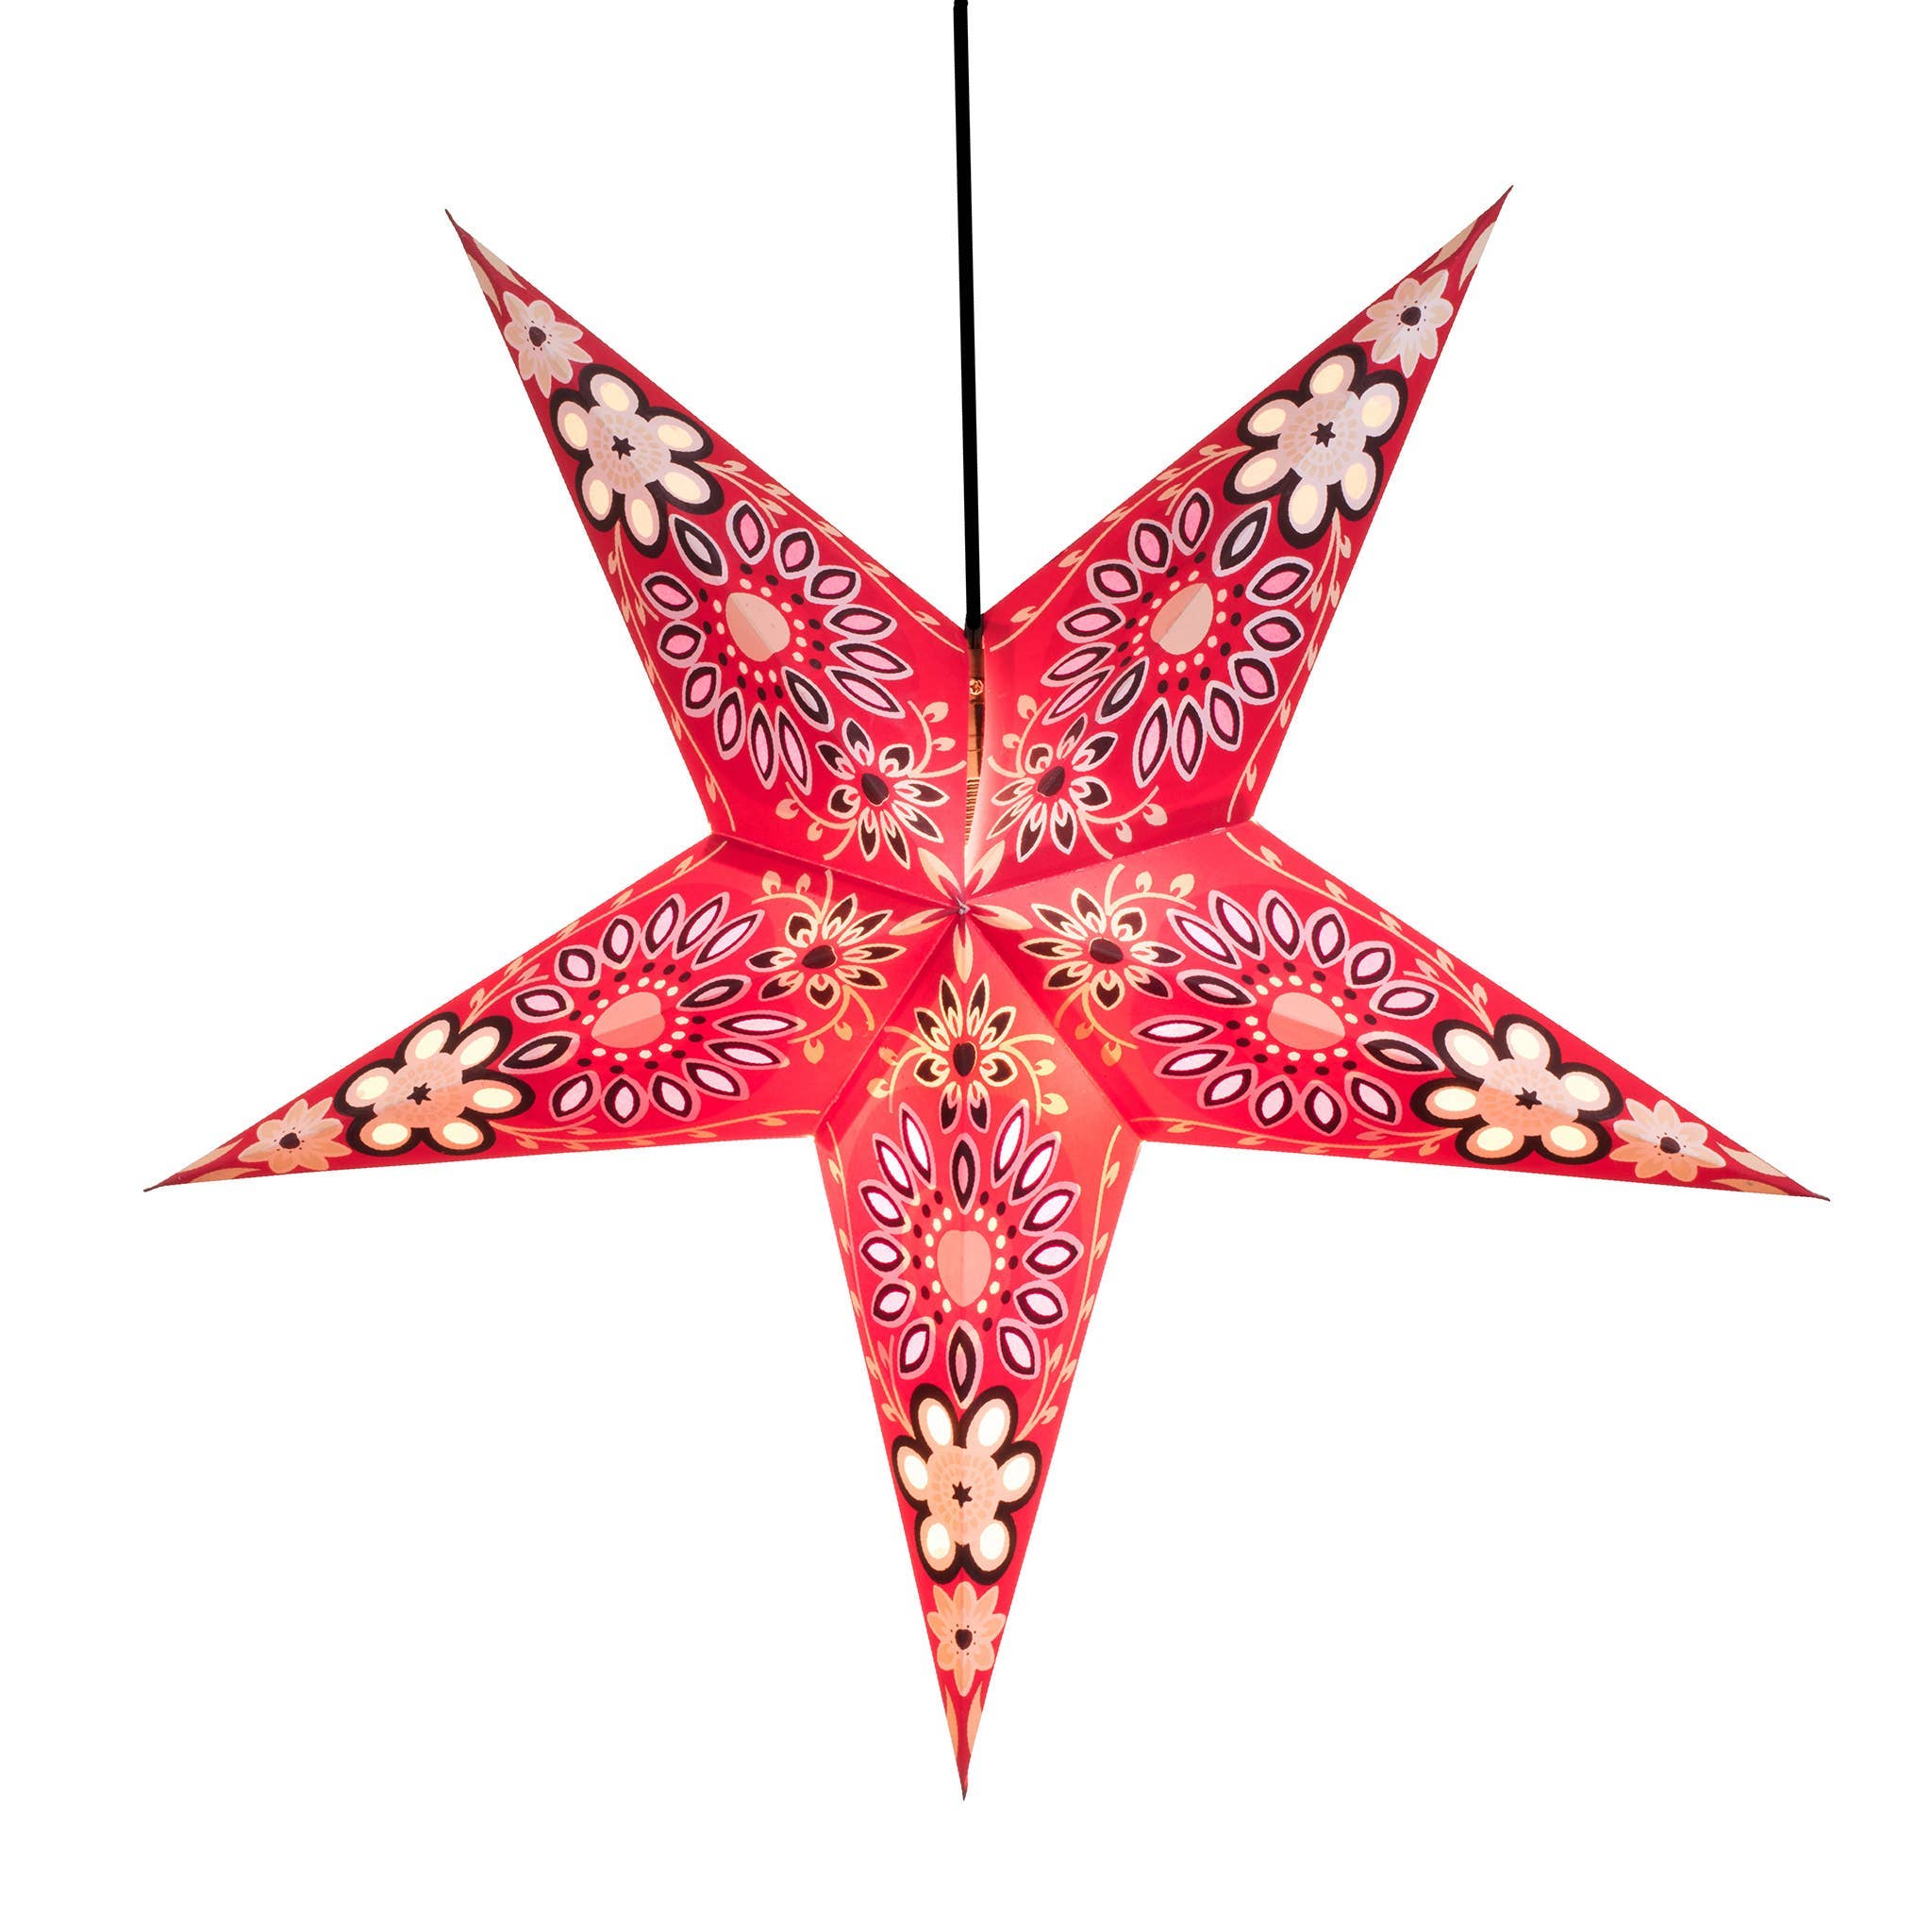 Om Paper Star Lanterns - Octopi